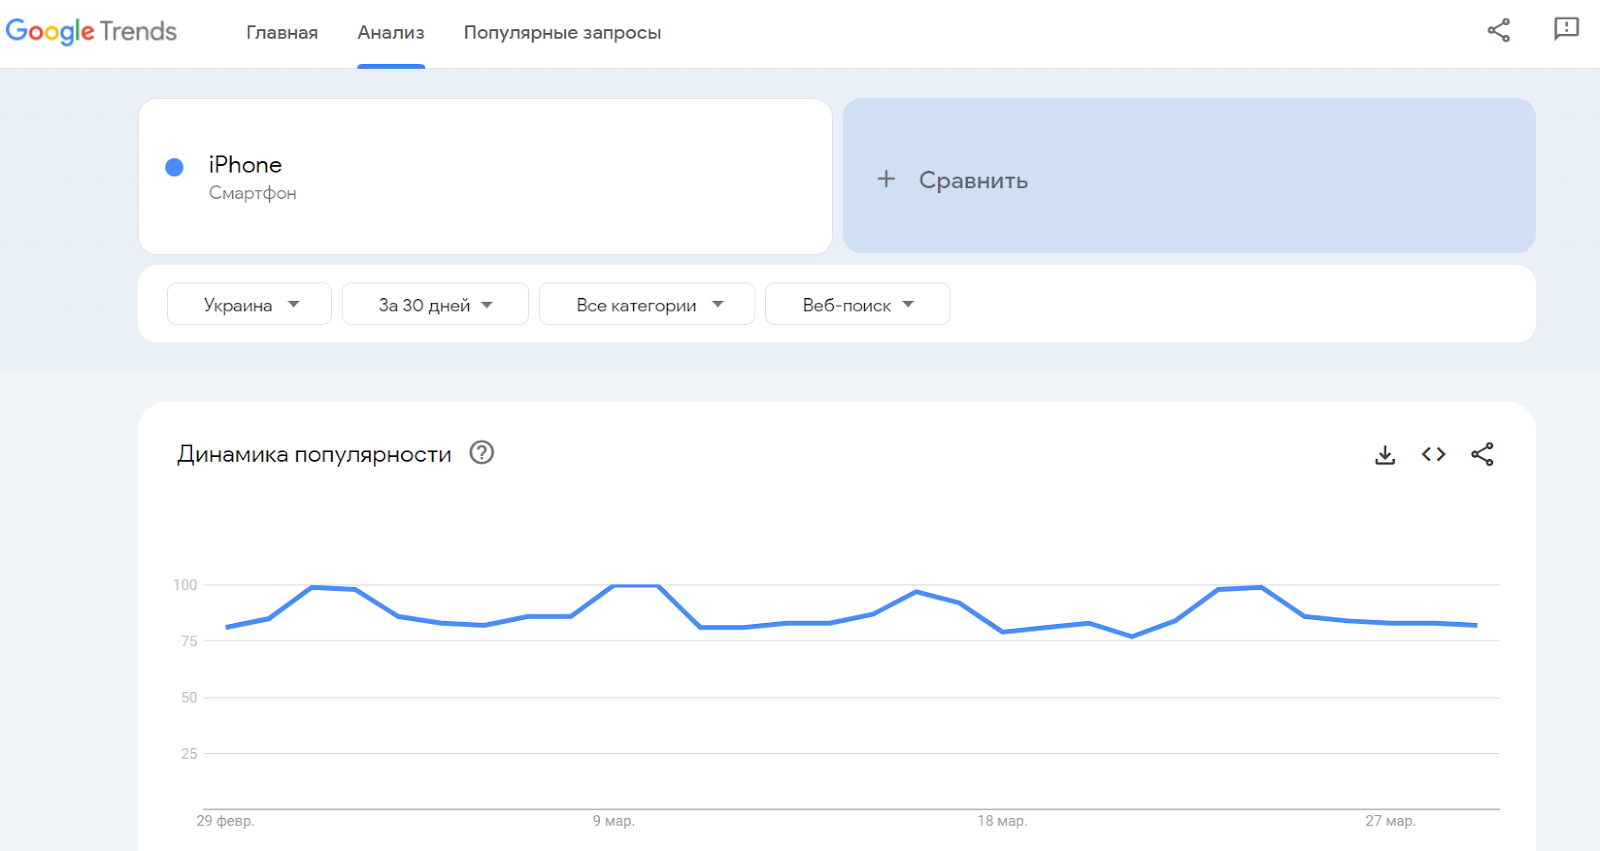 Google Trends